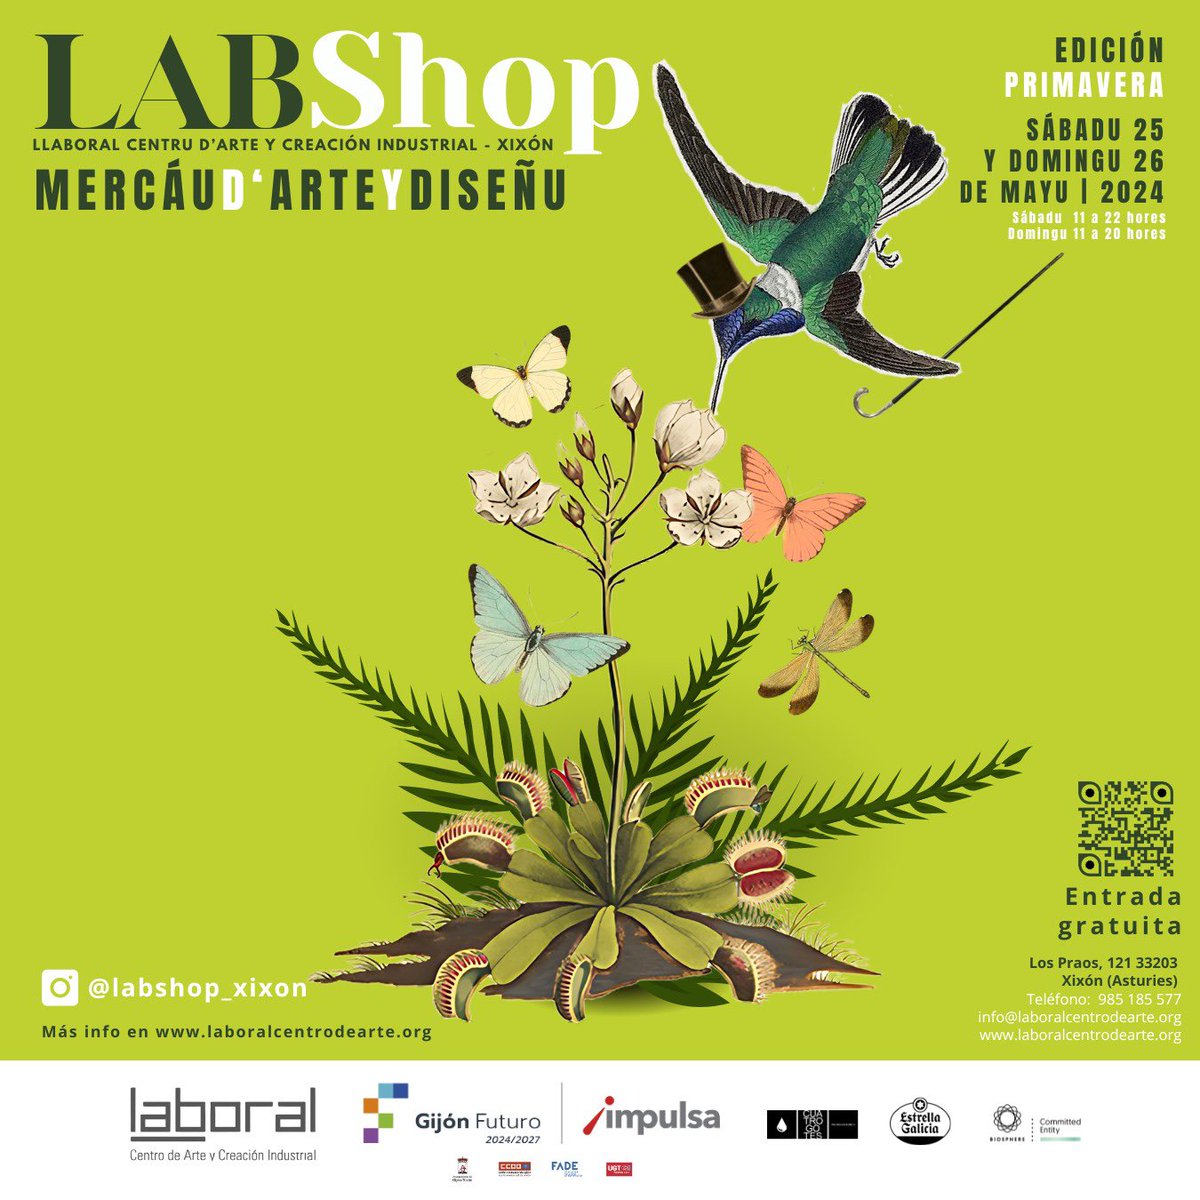 Queremos presentavos el cartelu del próximu LABShop, edición primavera, que preparemos pa @LABoral. El vienres nel instagram del mercáu d’arte y diseñu (@labshop_xixon) va anunciase’l programa del eventu, que va celebrase’l 25 y 26 de mayu. #mercáudarteydiseñu #asturies #xixón